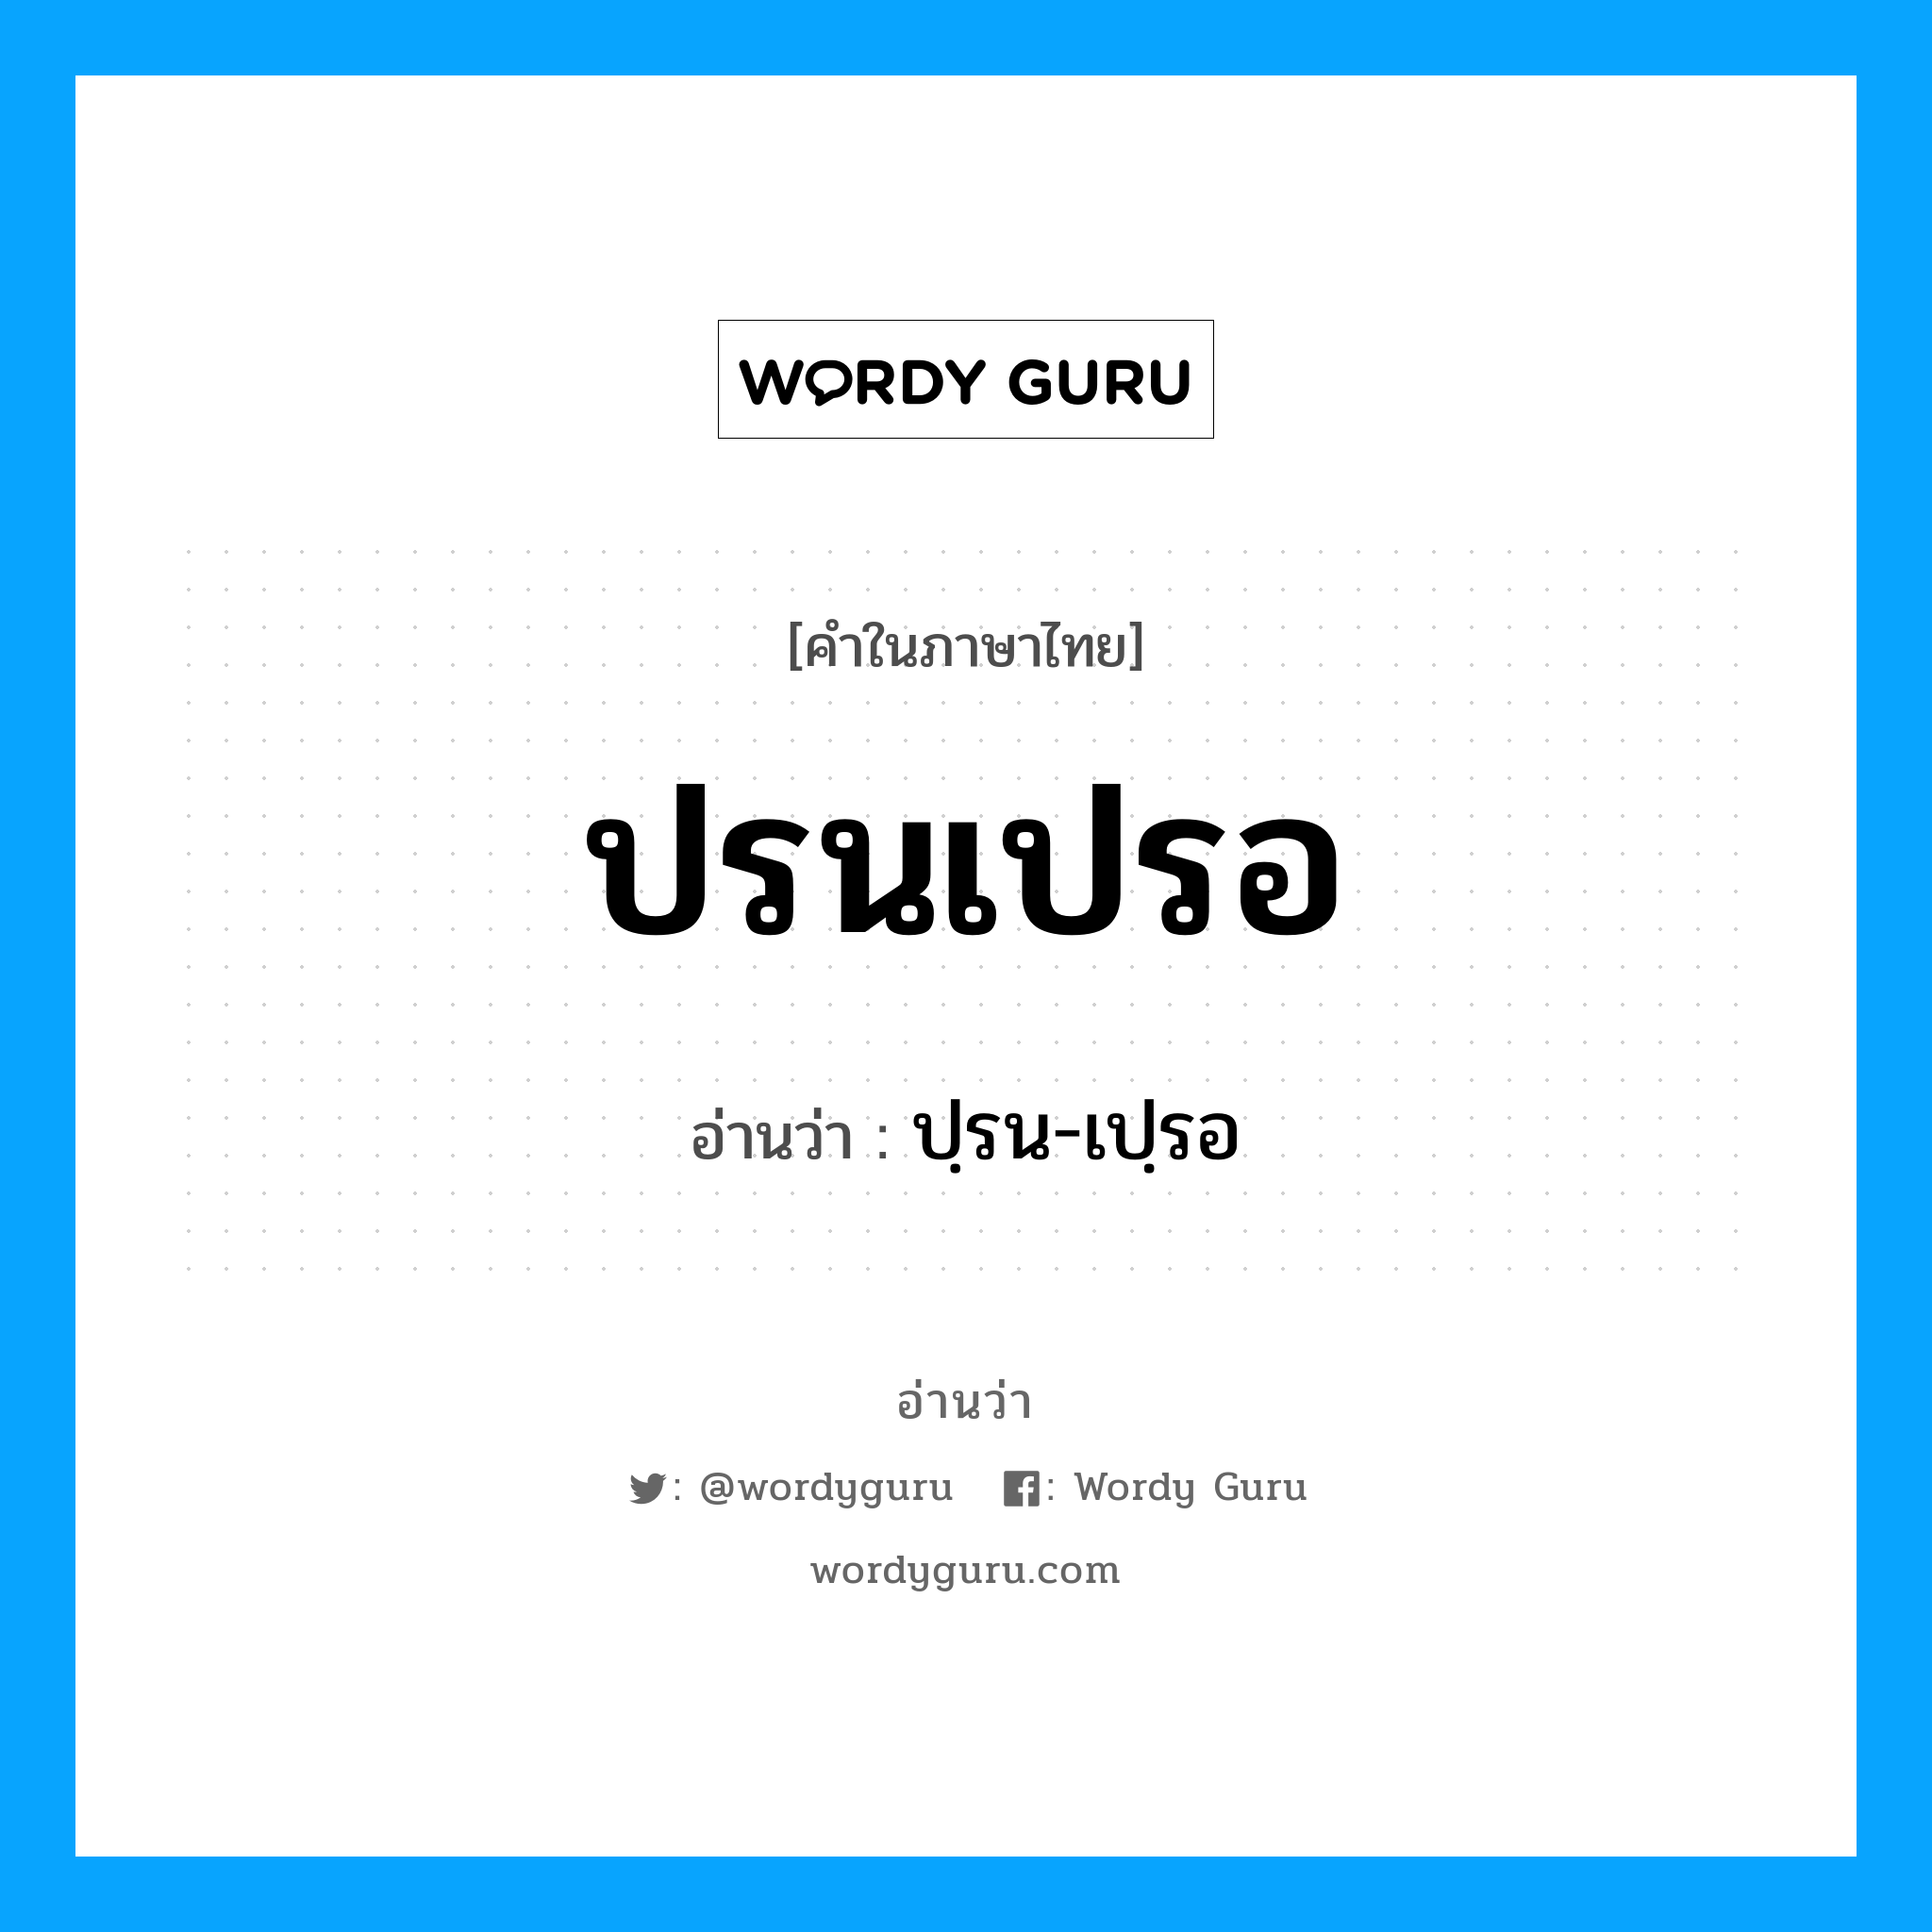 ปรนเปรอ อ่านว่า?, คำในภาษาไทย ปรนเปรอ อ่านว่า ปฺรน-เปฺรอ